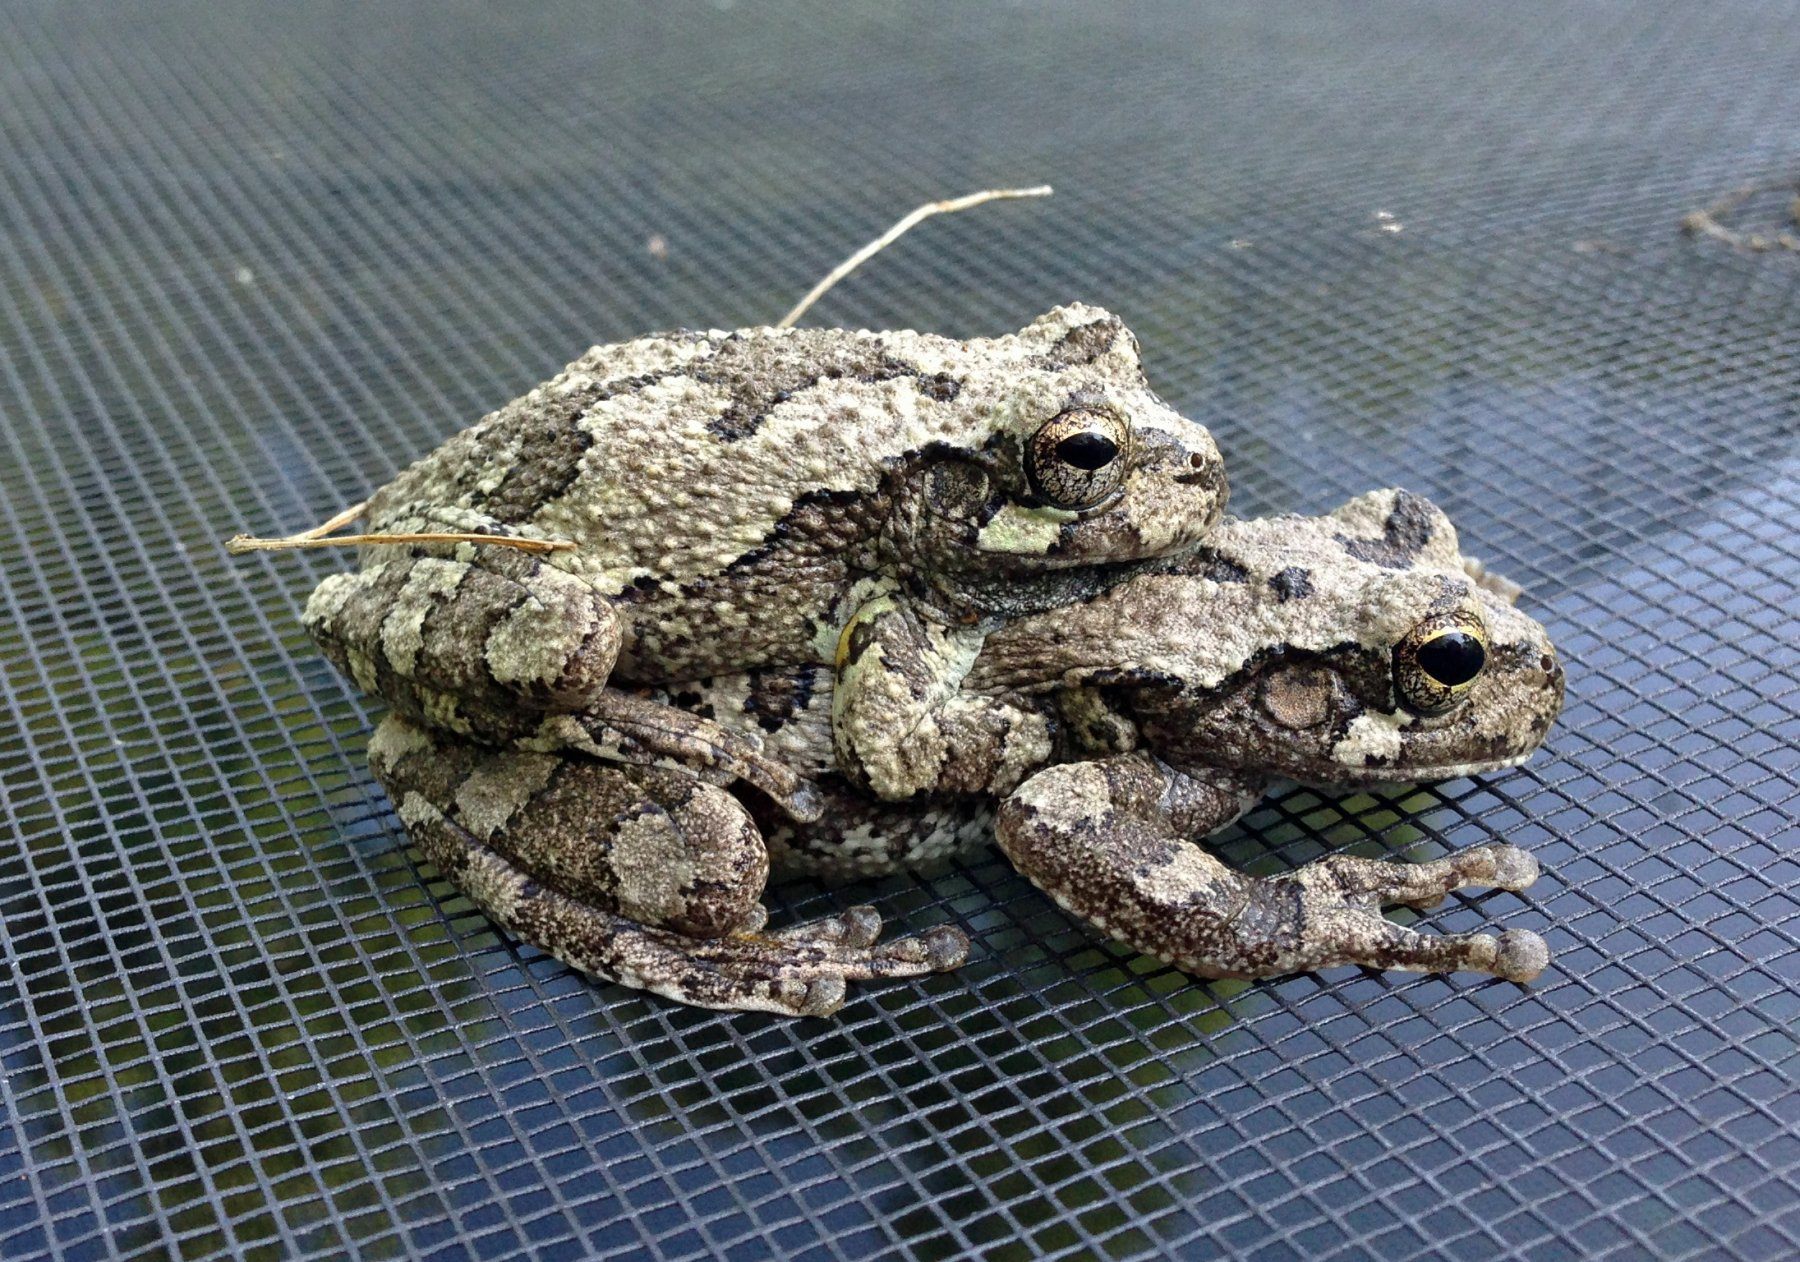 Gray Treefrog. Амплексус. Серая древесная лягушка. Hyla versicolor. Развитие серой жабы